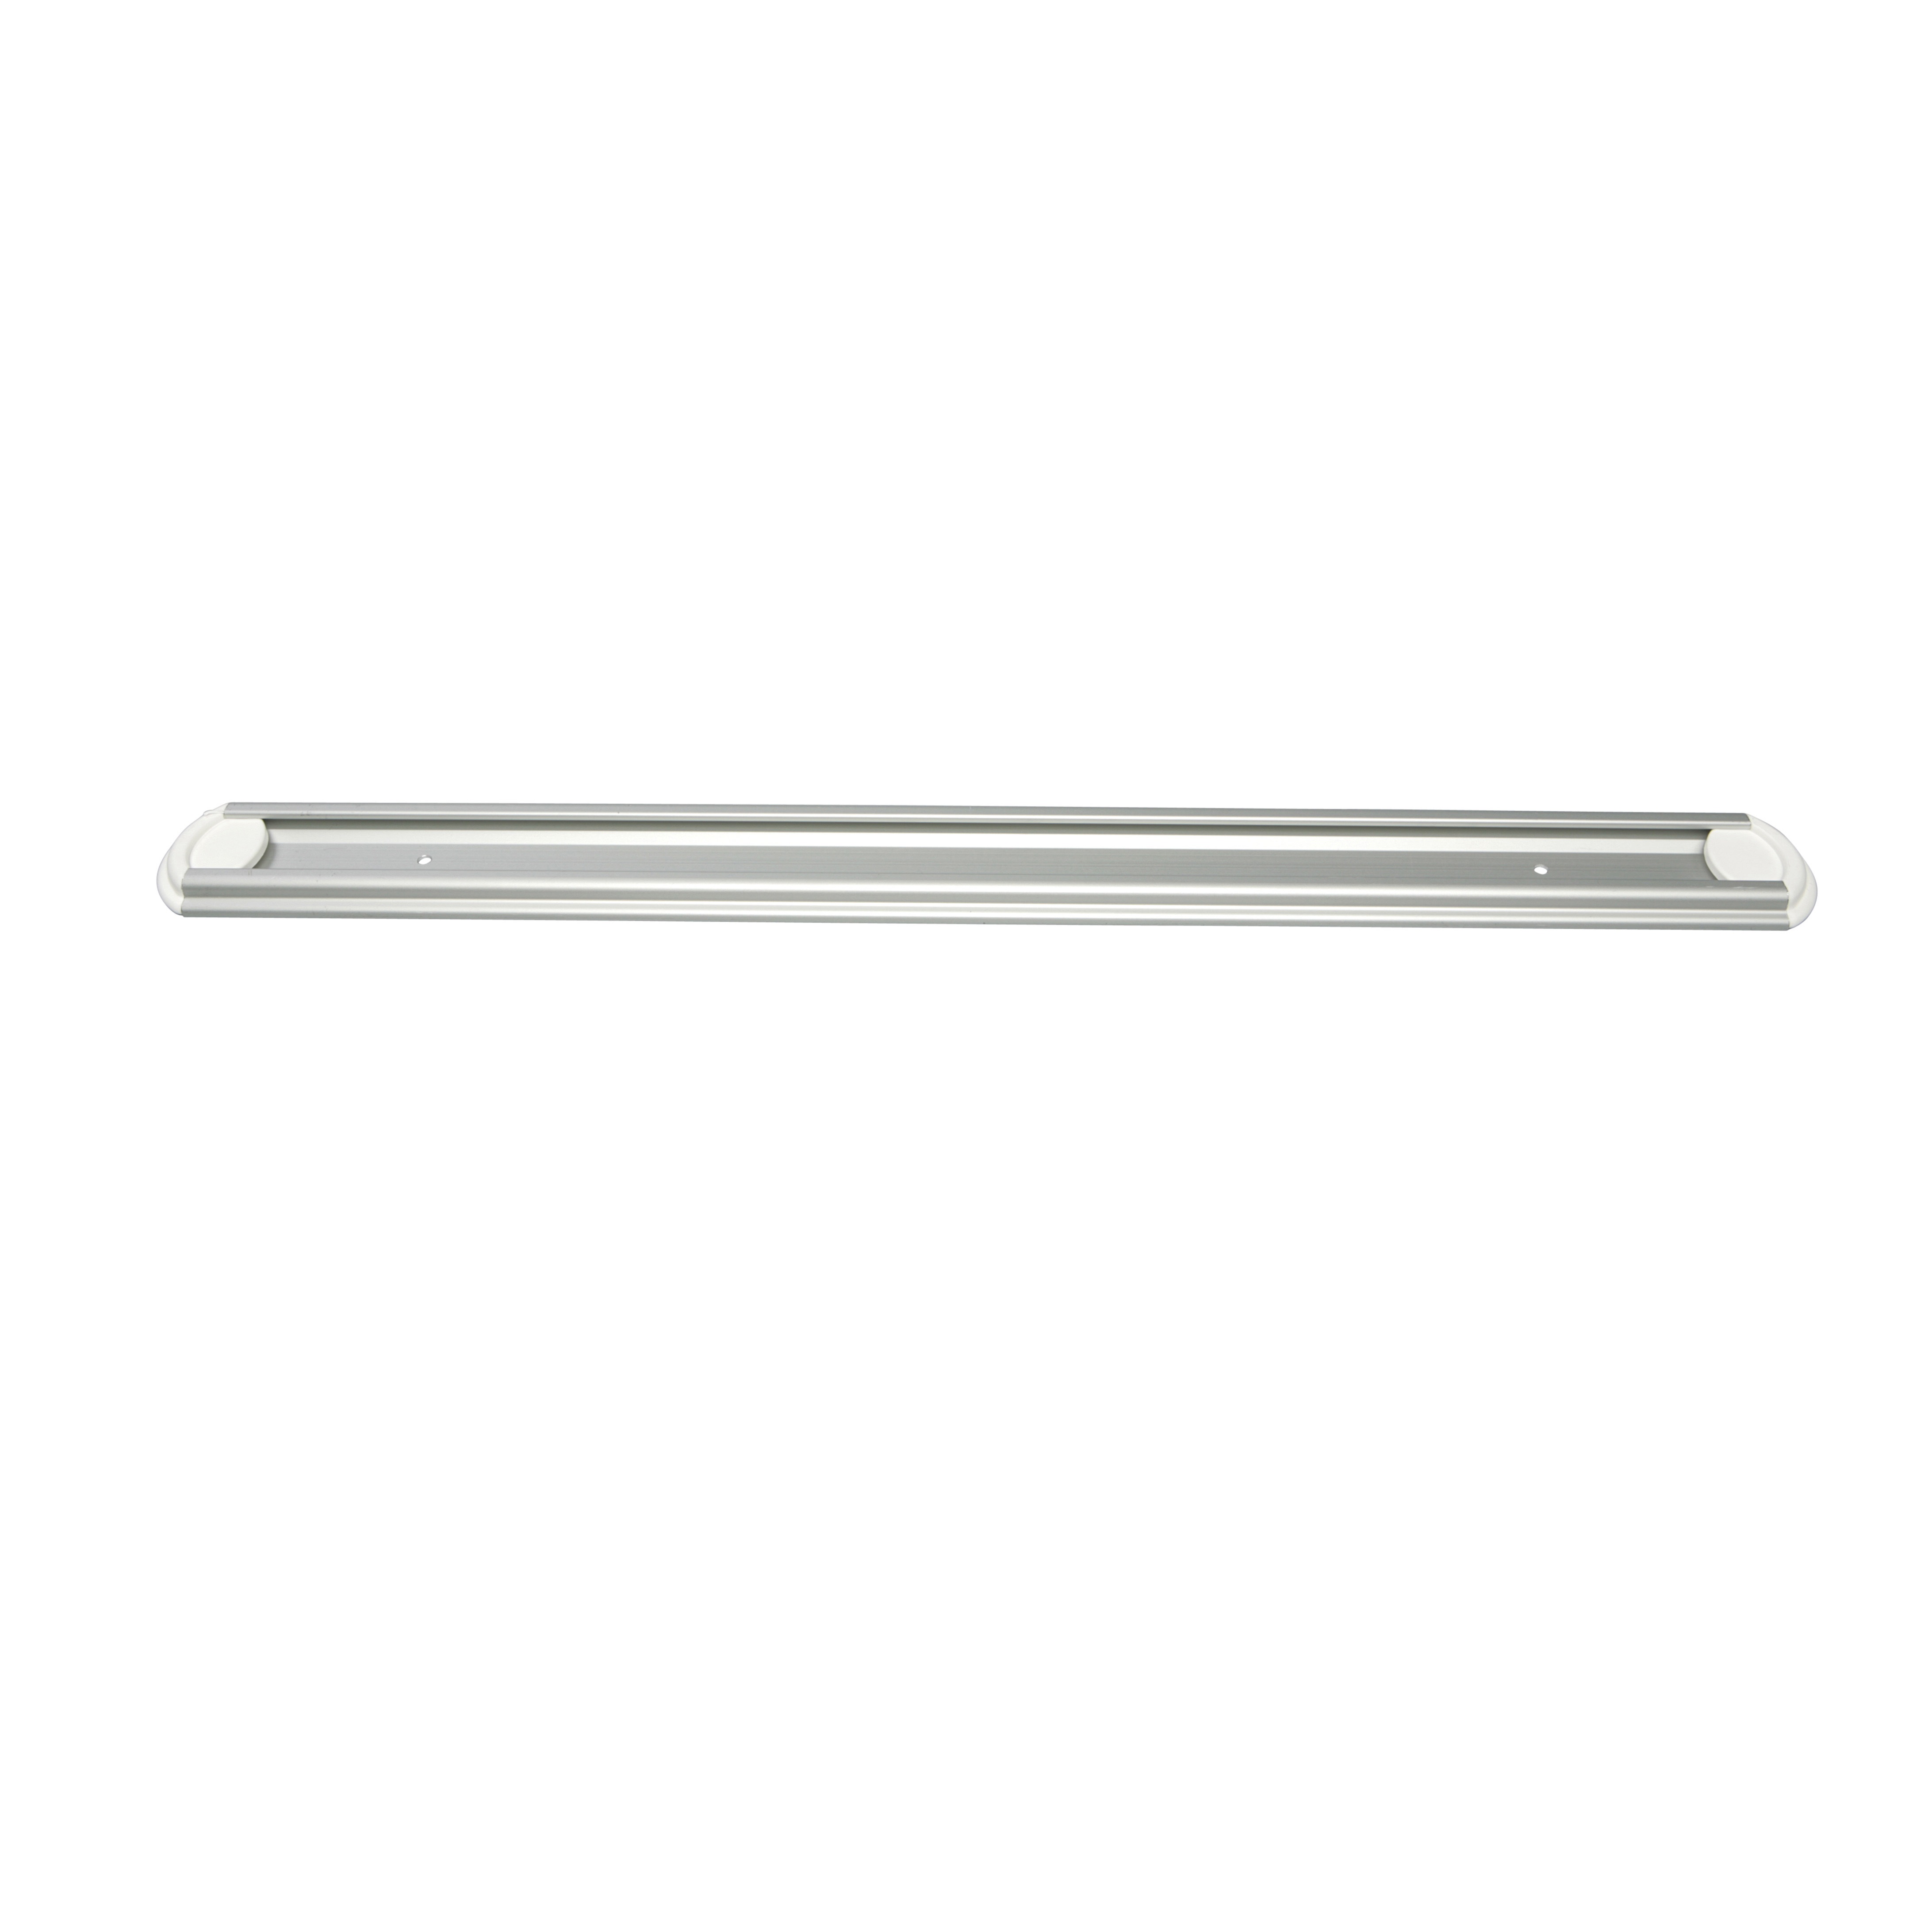 AB Hygiene Wandschiene (Aluminium) 500 mm, weiß mit Schrauben, Dübeln und Endkappen